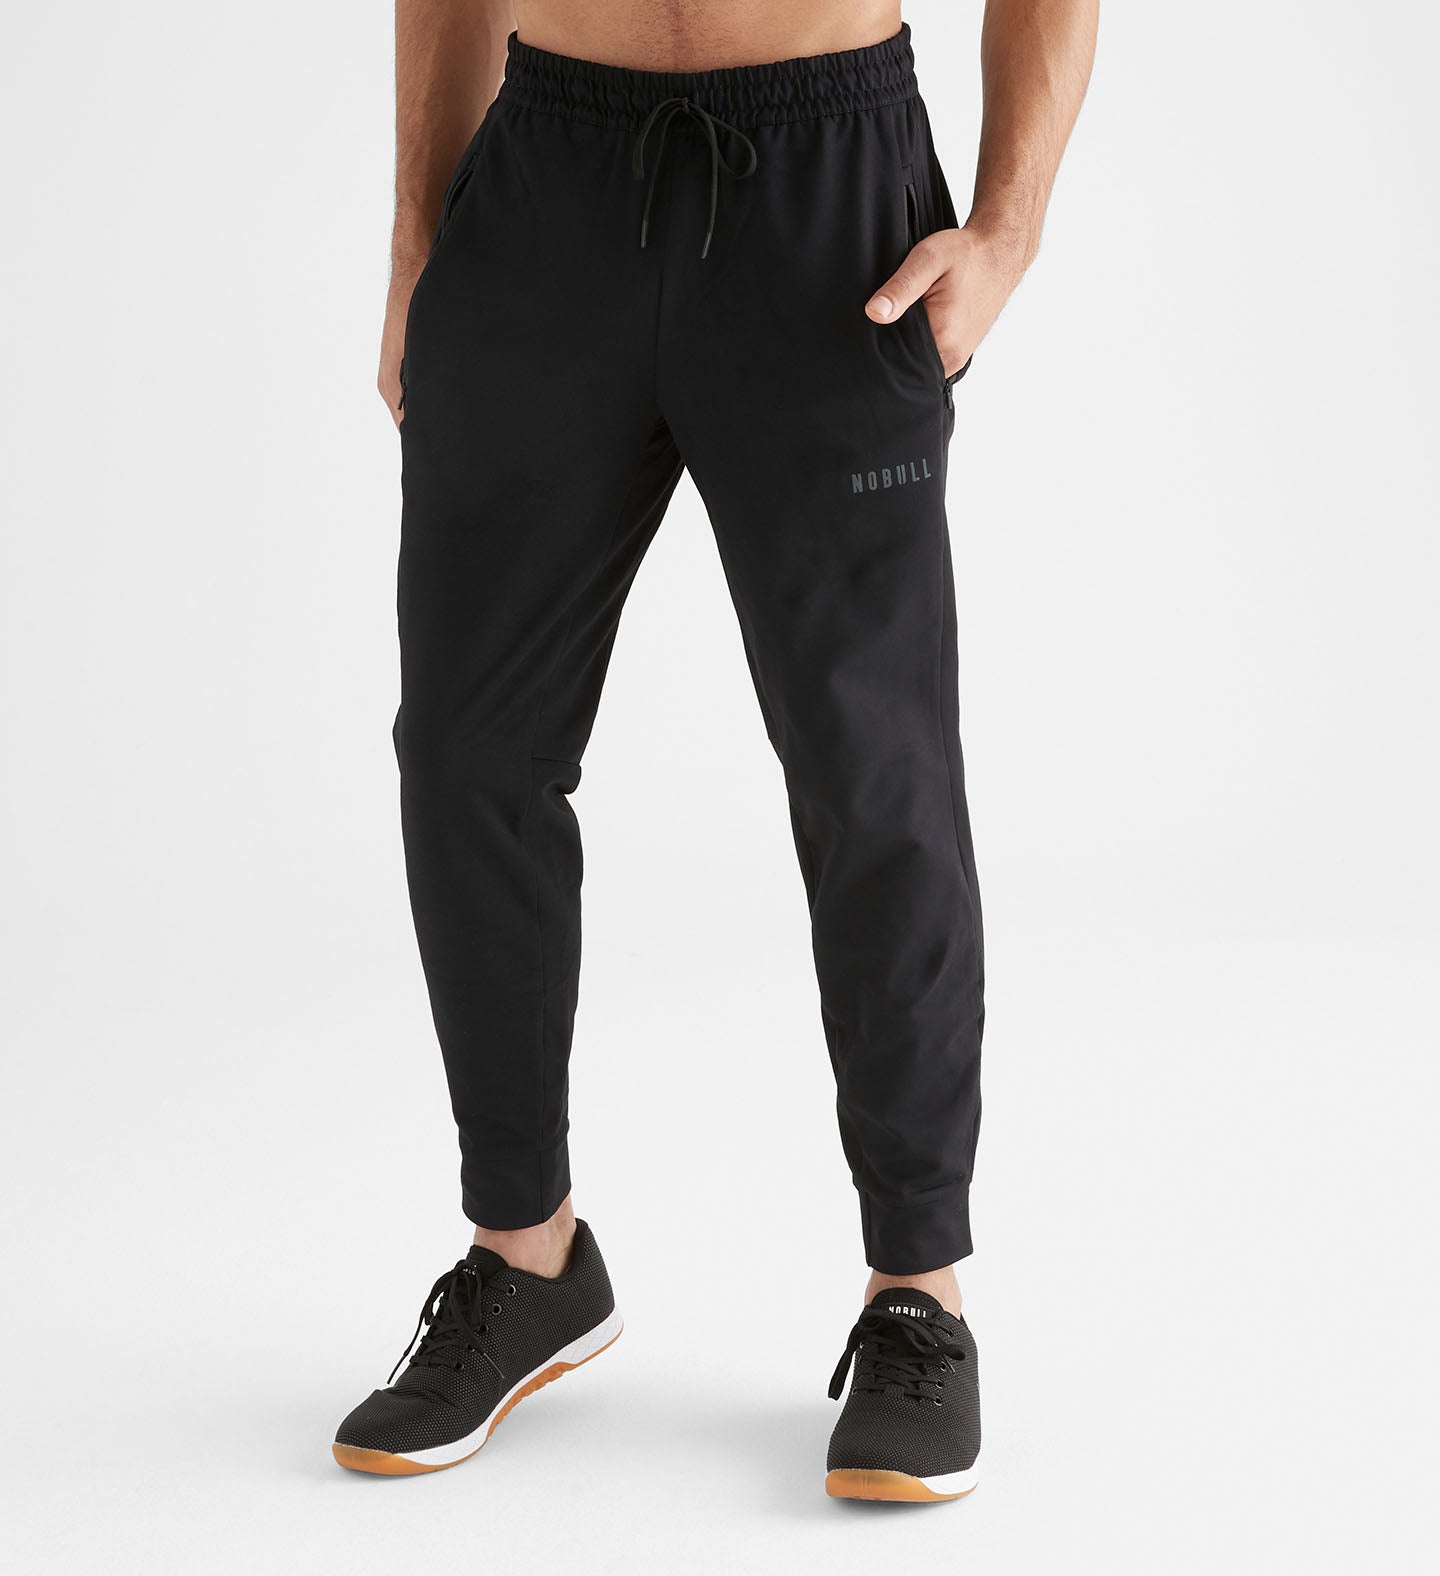 Men's Joggers - Men's Sweatpants & Black Joggers